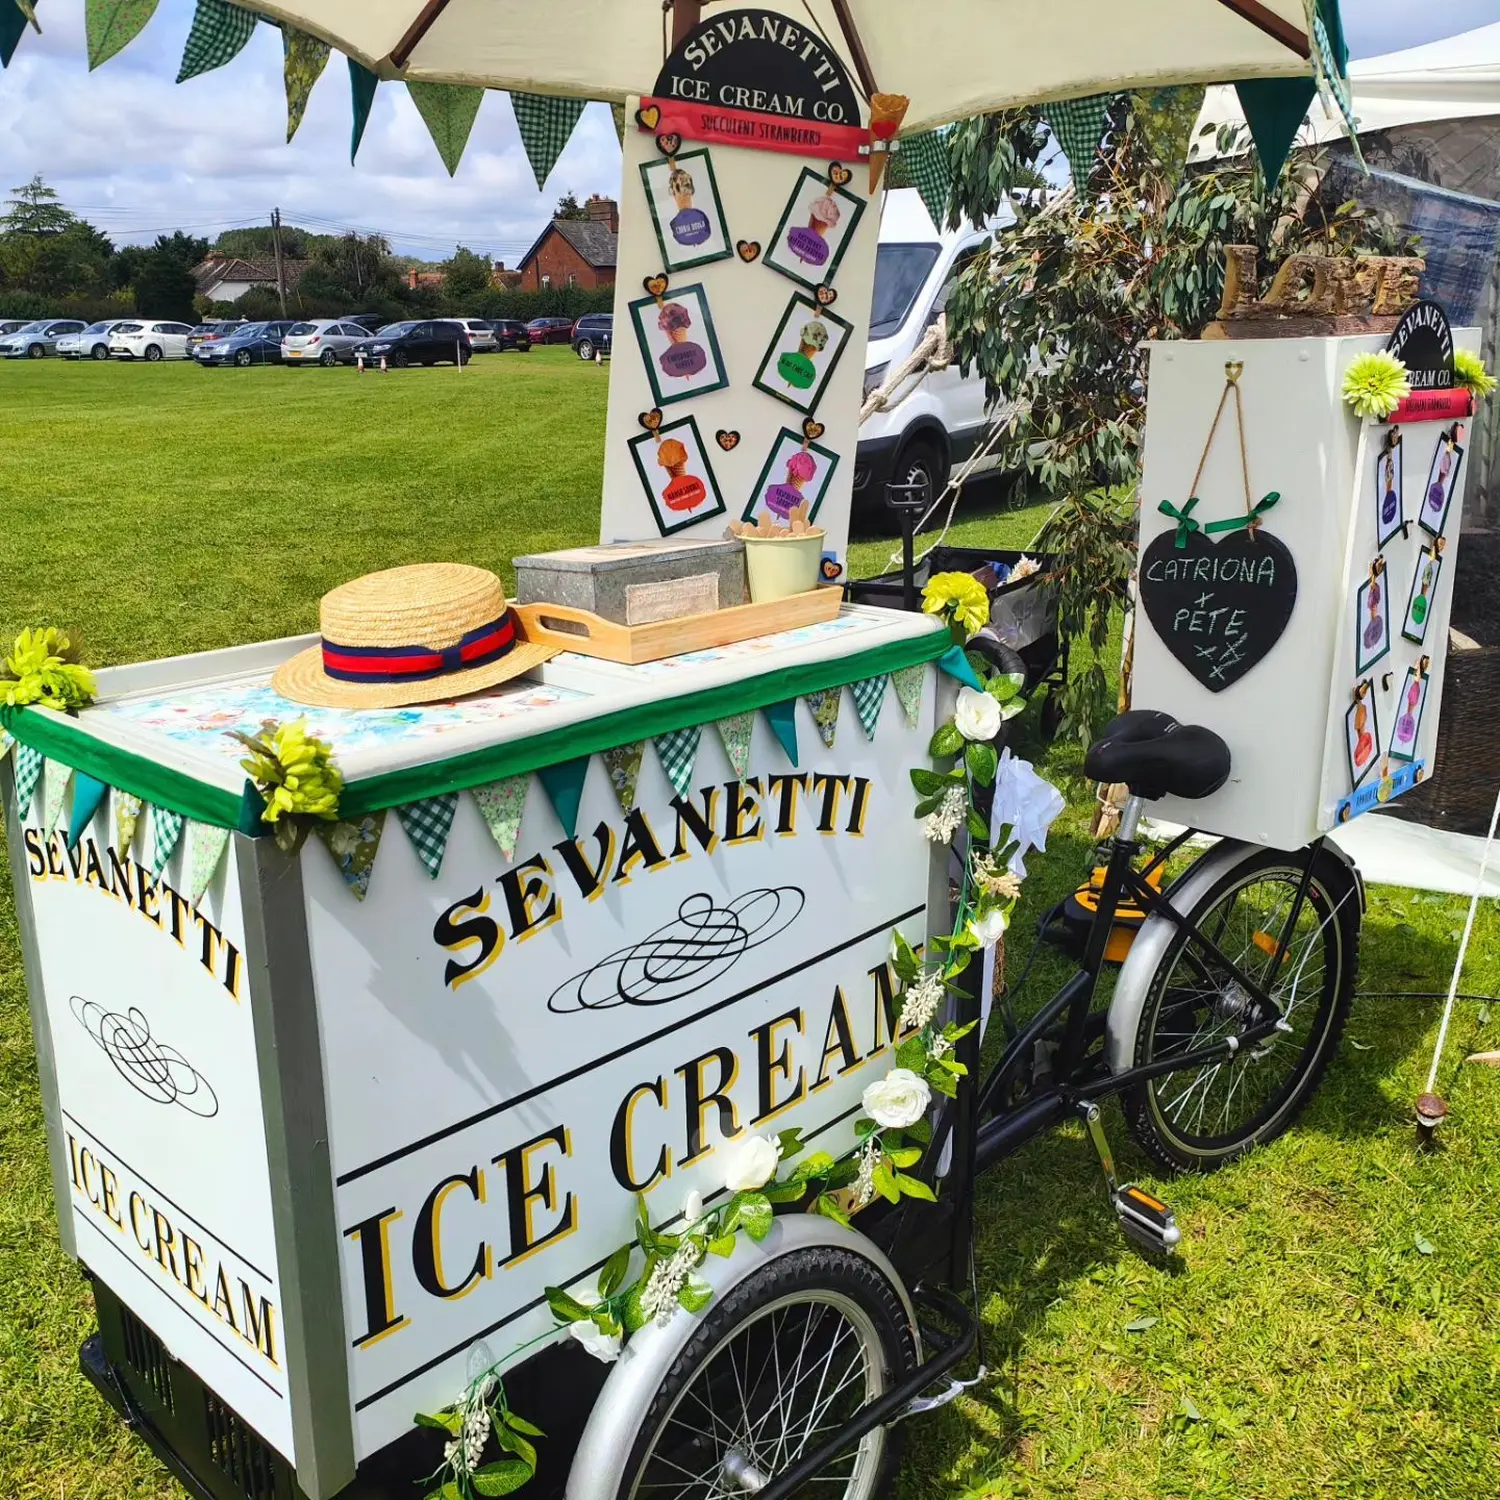 Sevanetti Ice Cream Bikes green color decoration sets